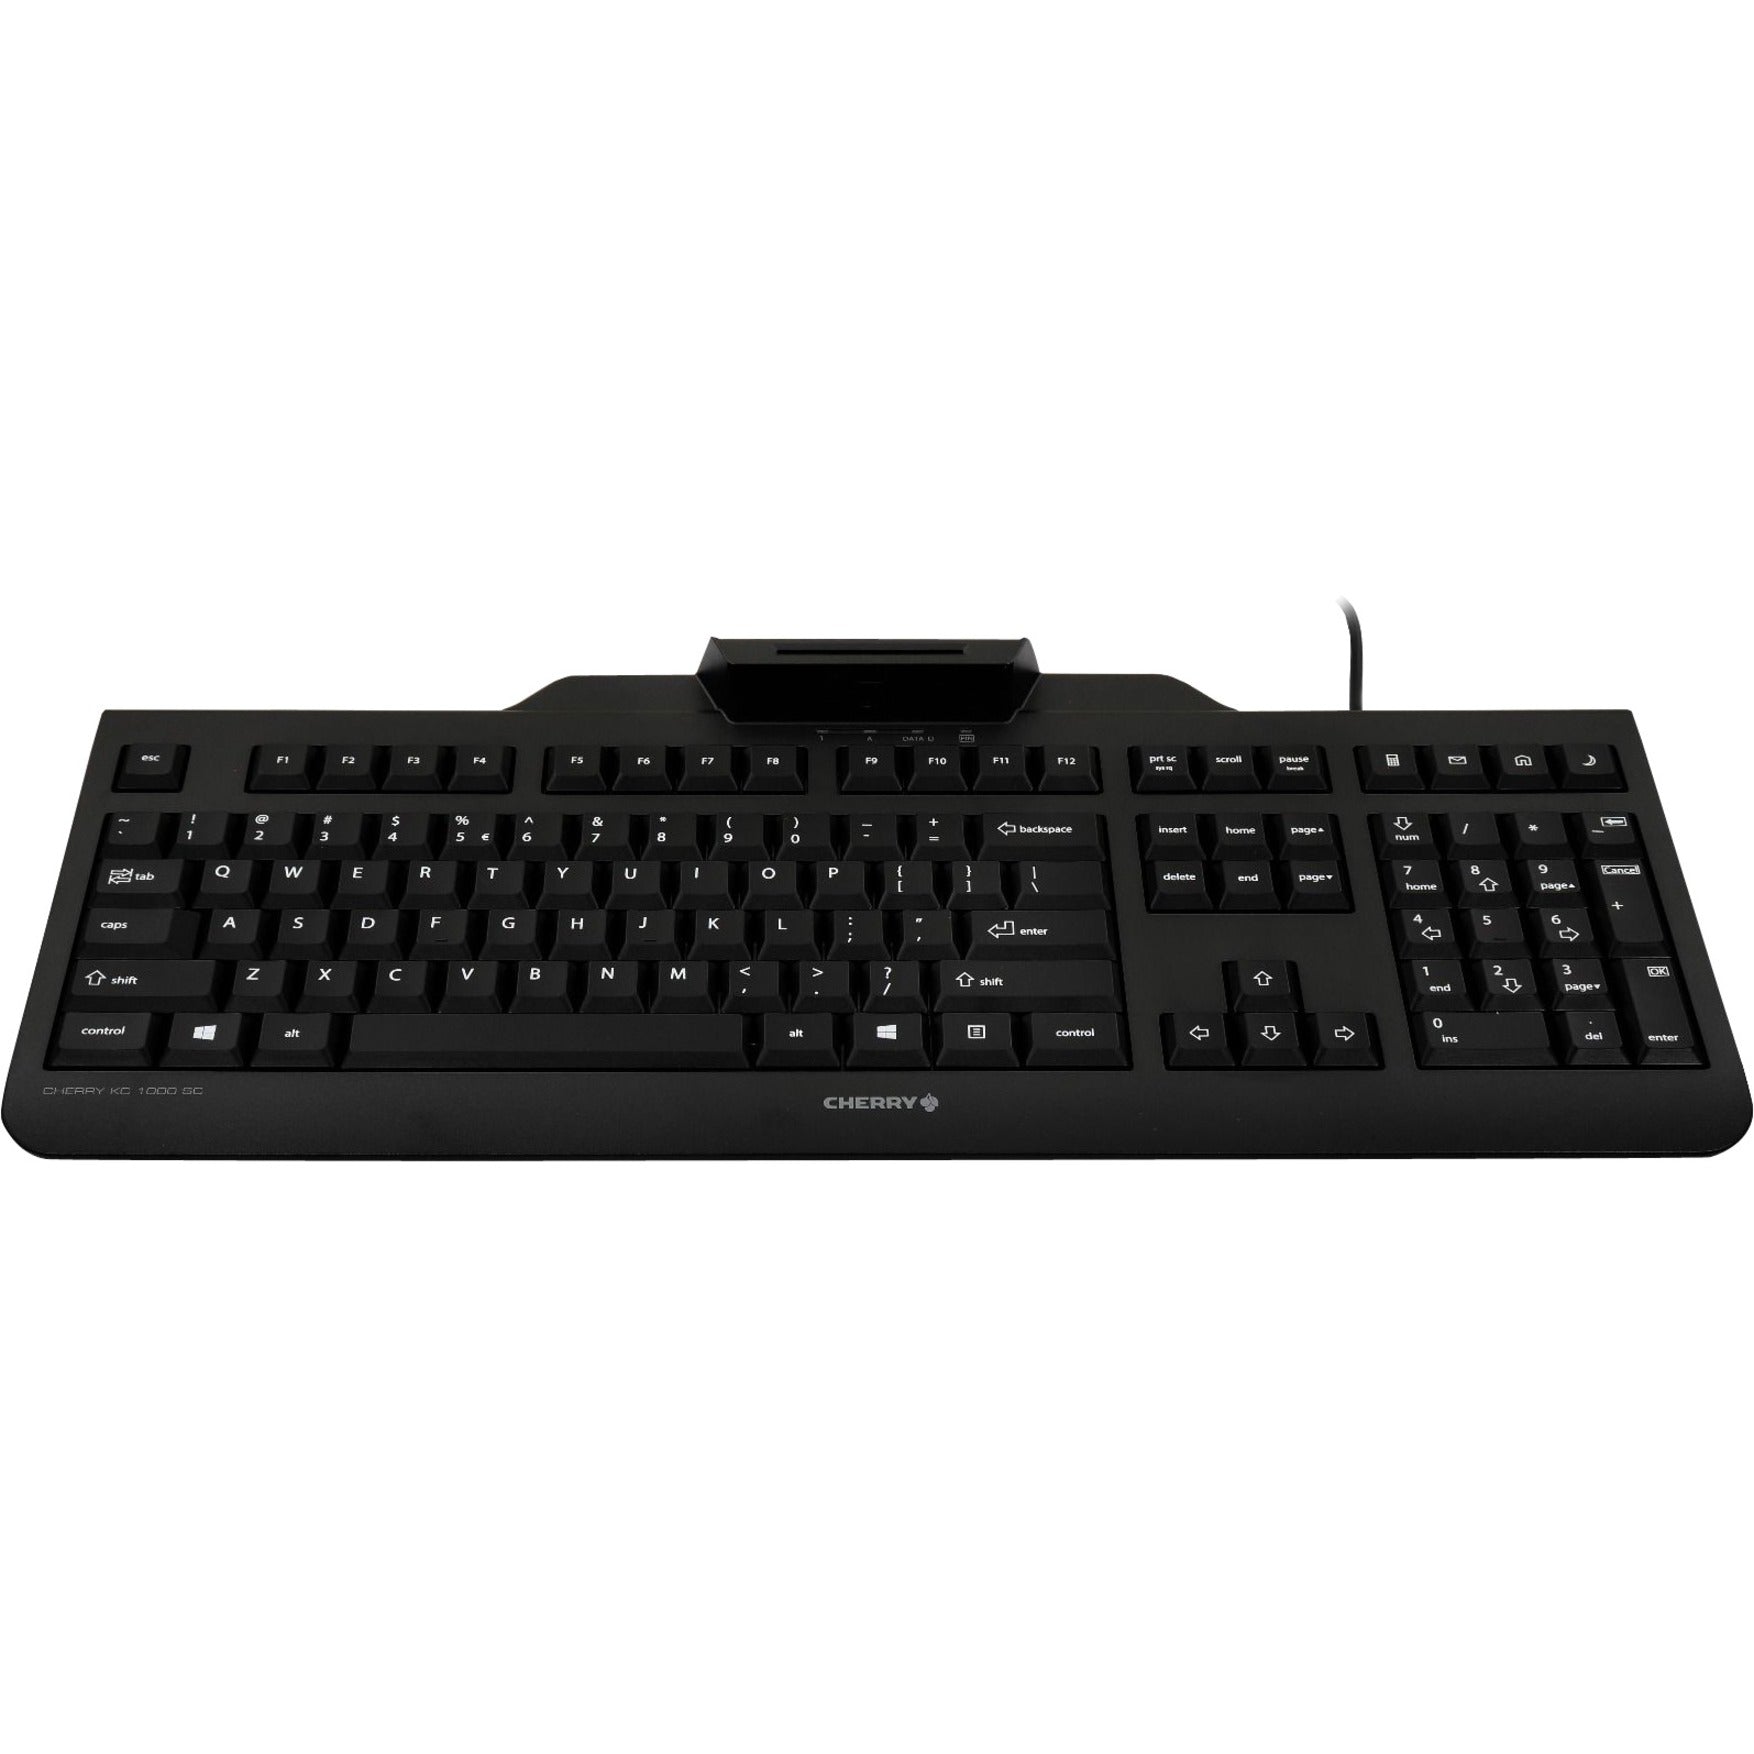 CHERRY JK-A0100EU-2 KC 1000 SC Wired Keyboard, QWERTZ Layout, USB Connectivity